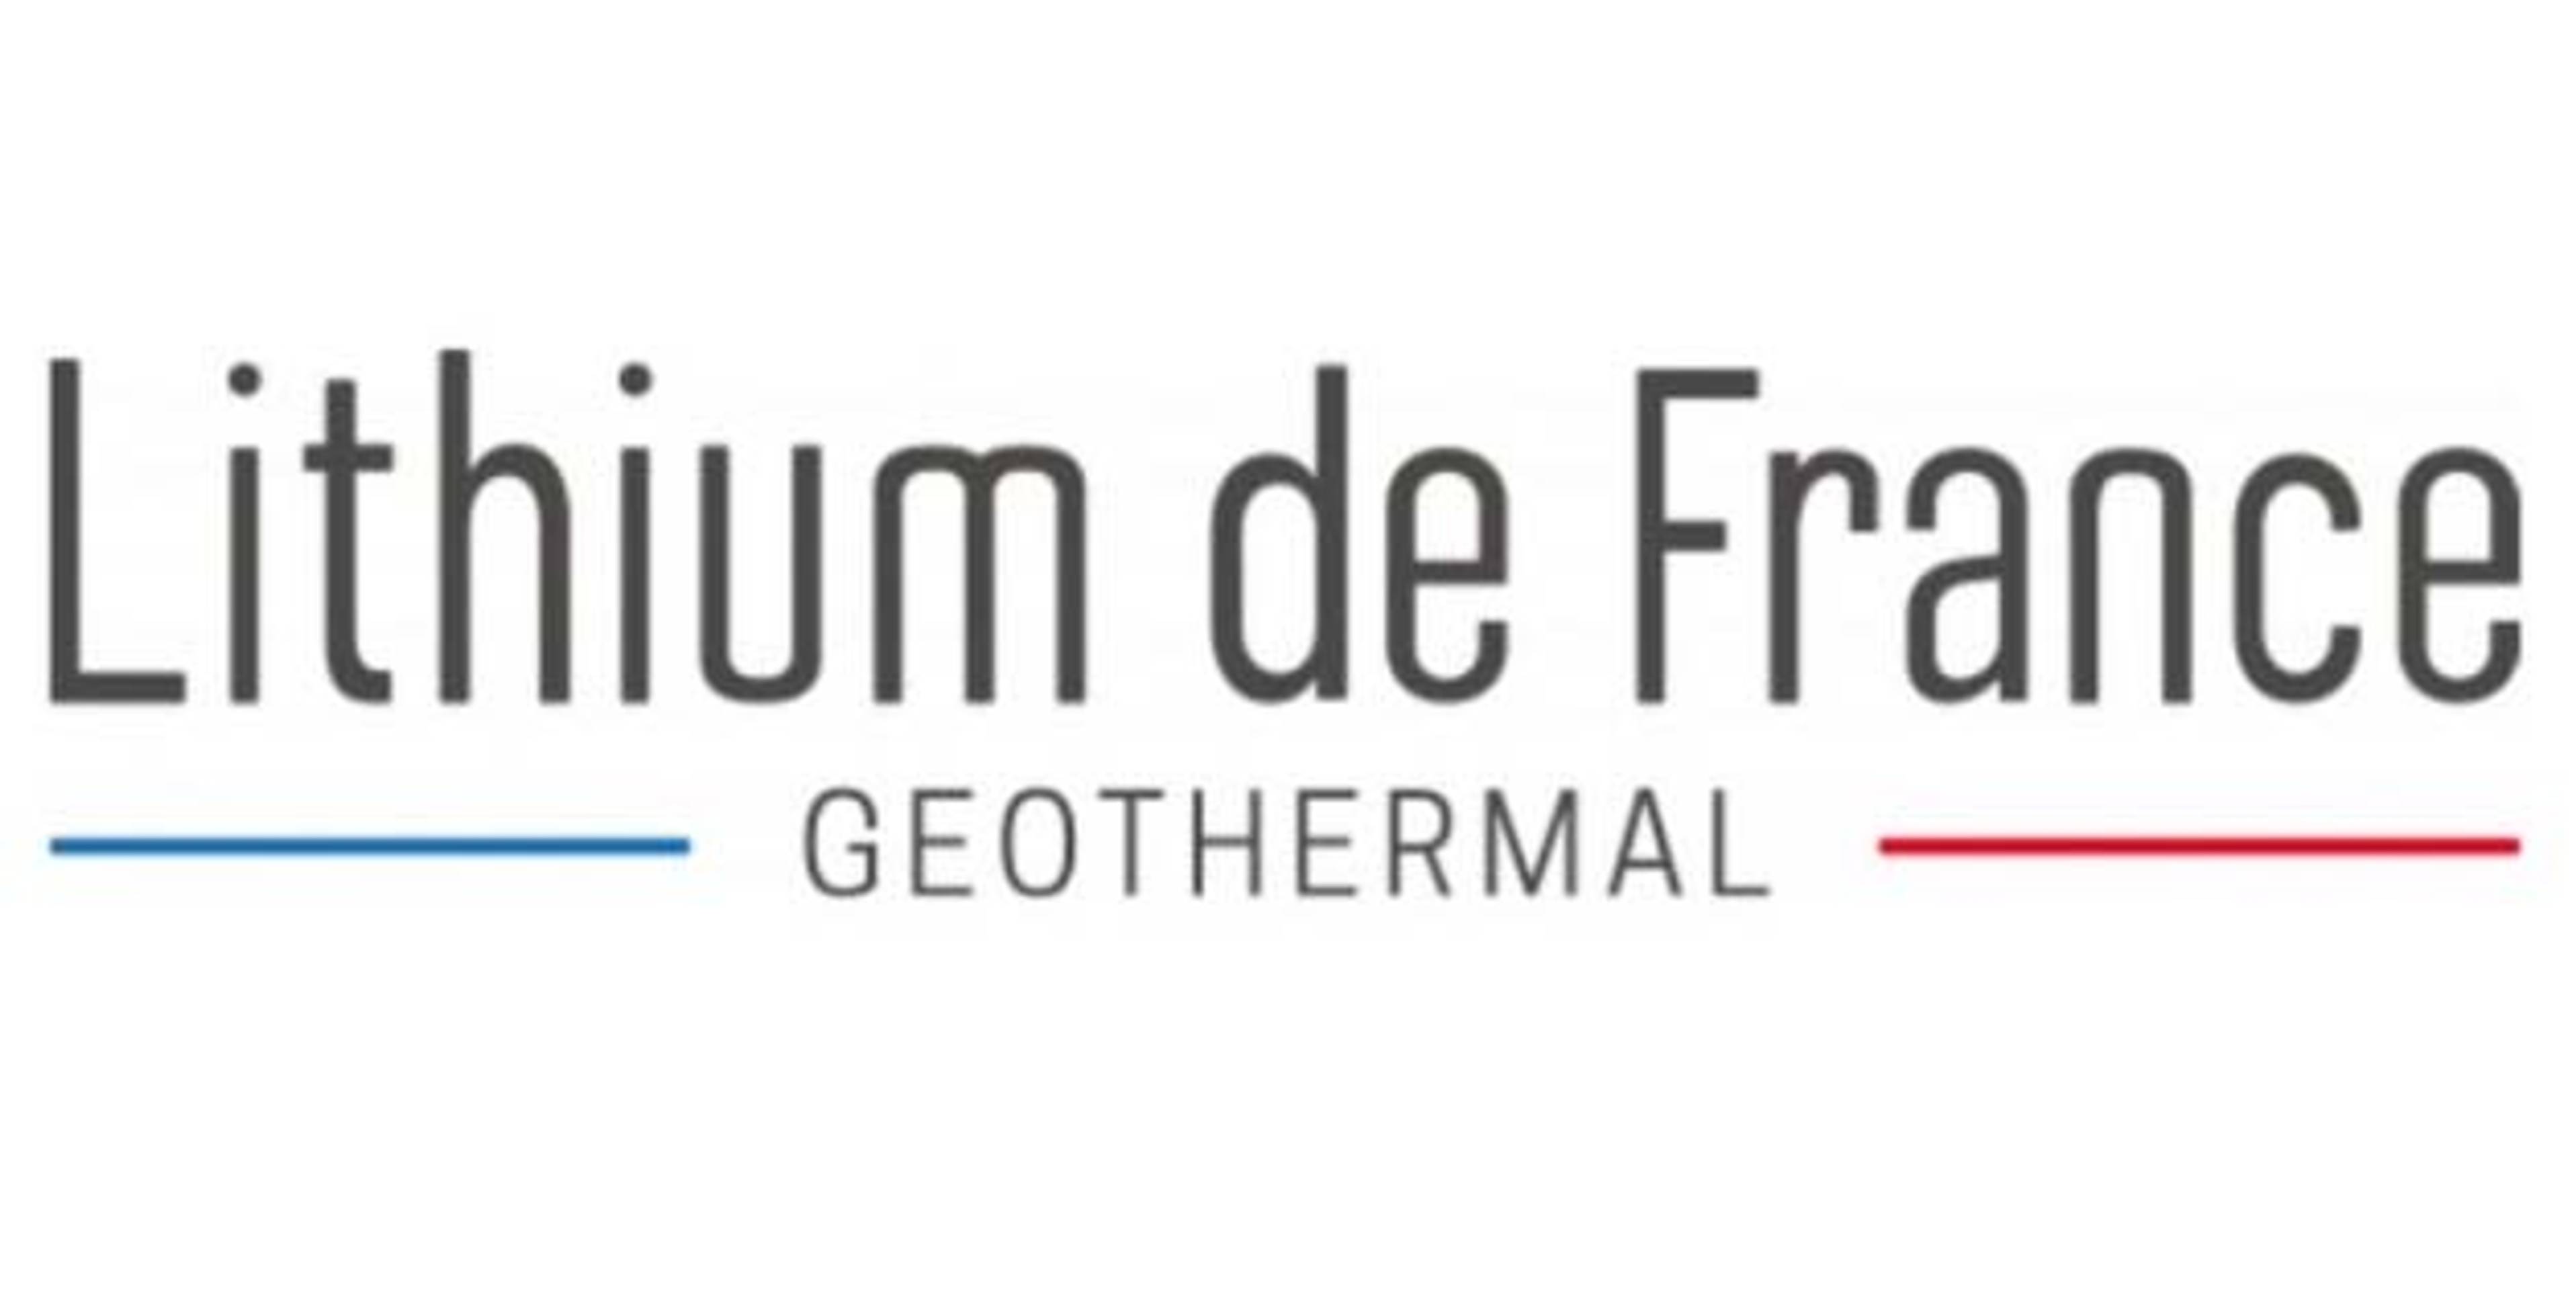 Lithium de France company logo